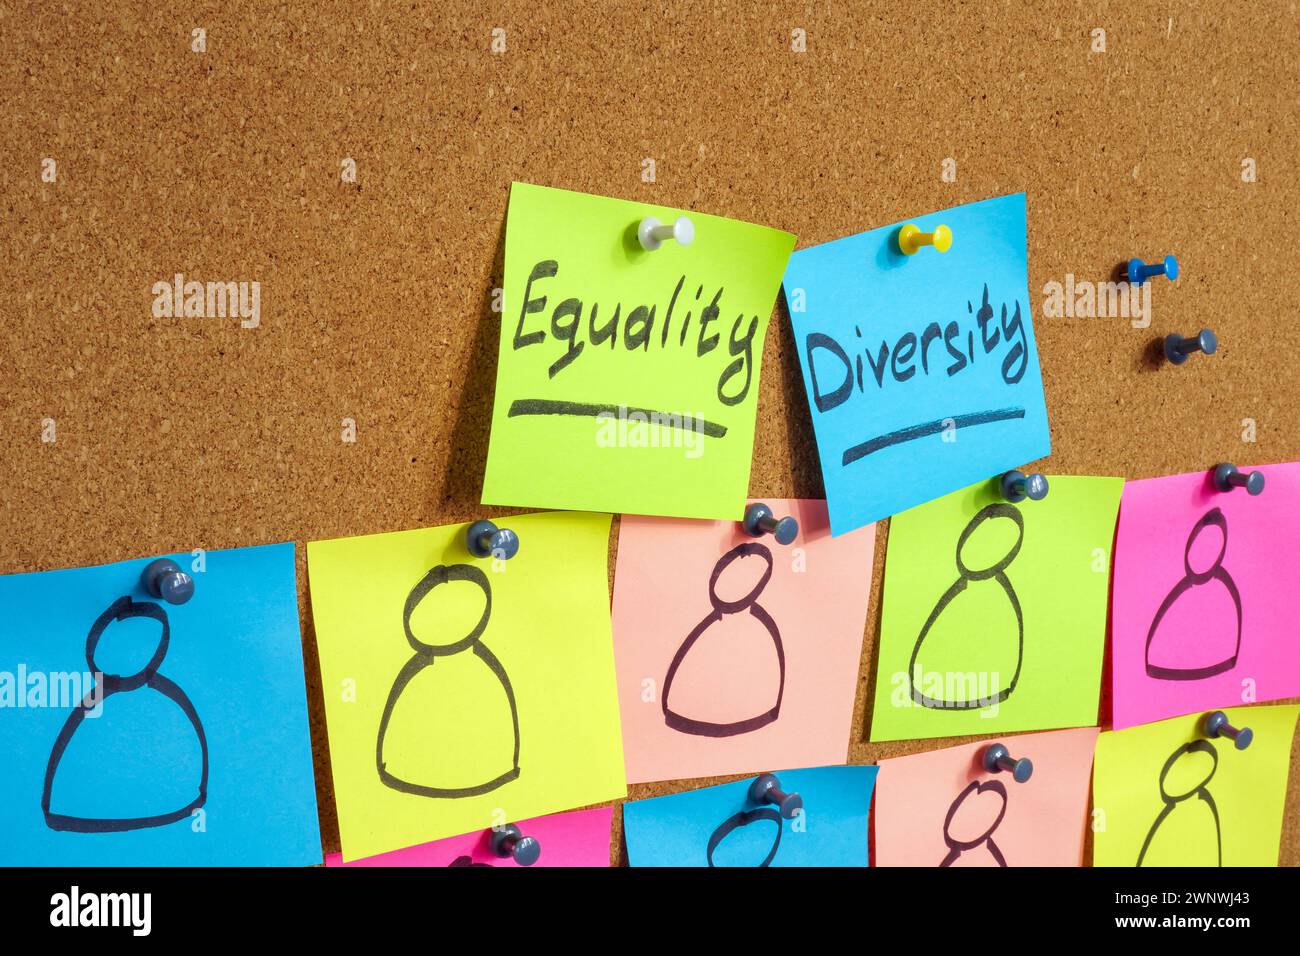 Gli adesivi con iscrizioni Equality e Diversity sono fissati sulla lavagna. Foto Stock